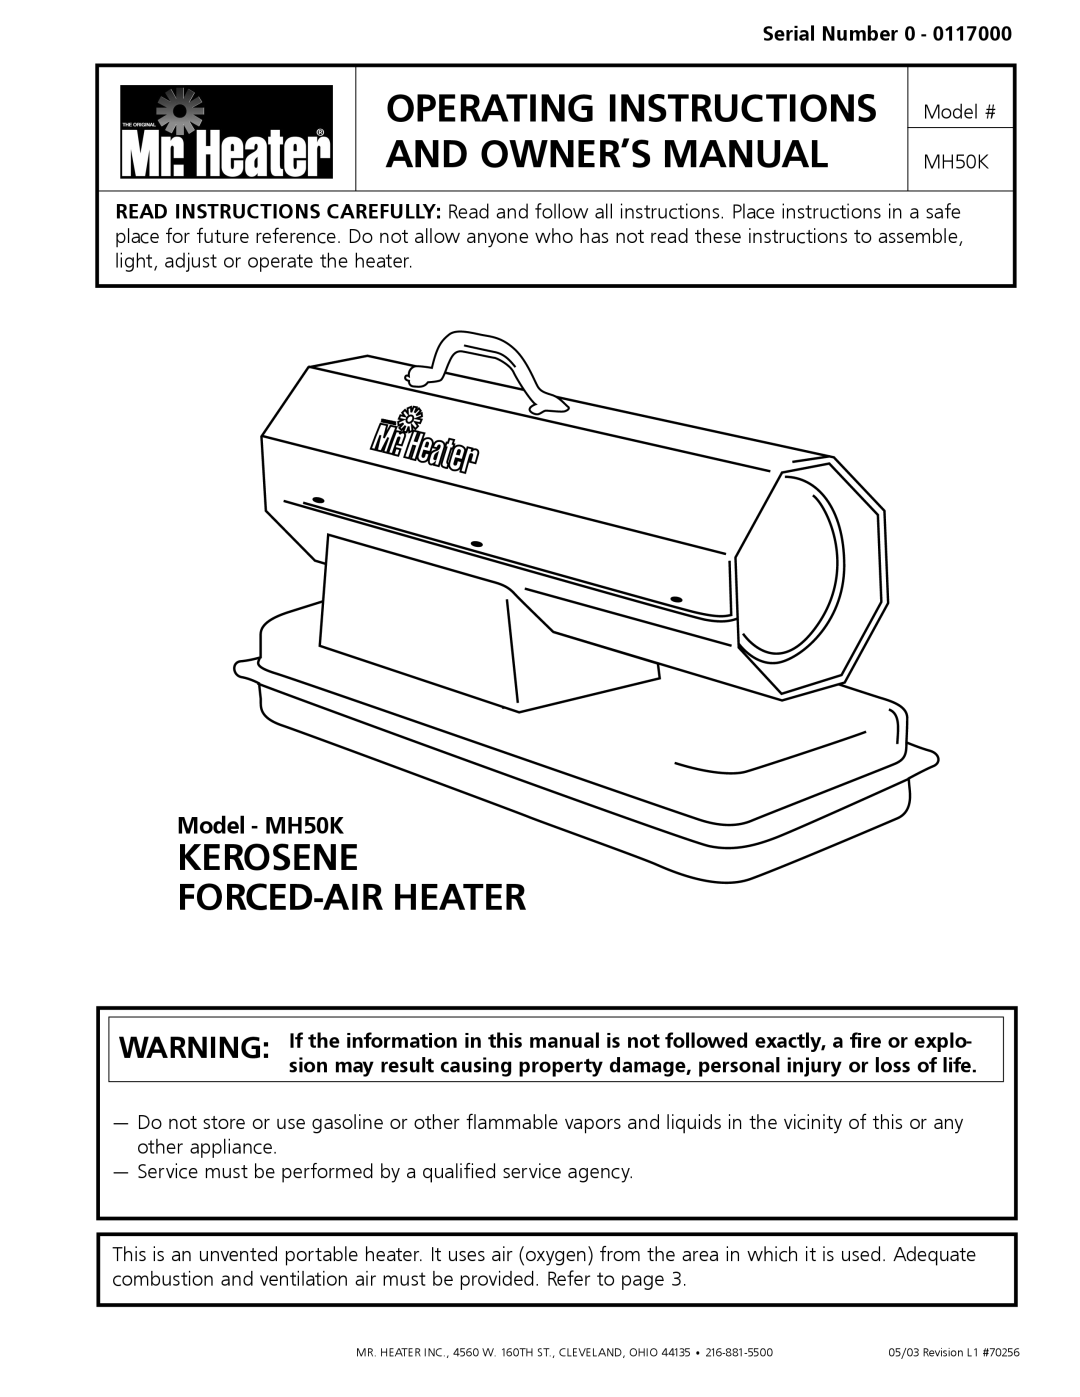 Mr. Heater operating instructions Model - MH50K, Serial Number, Kerosene Forced-Airheater 